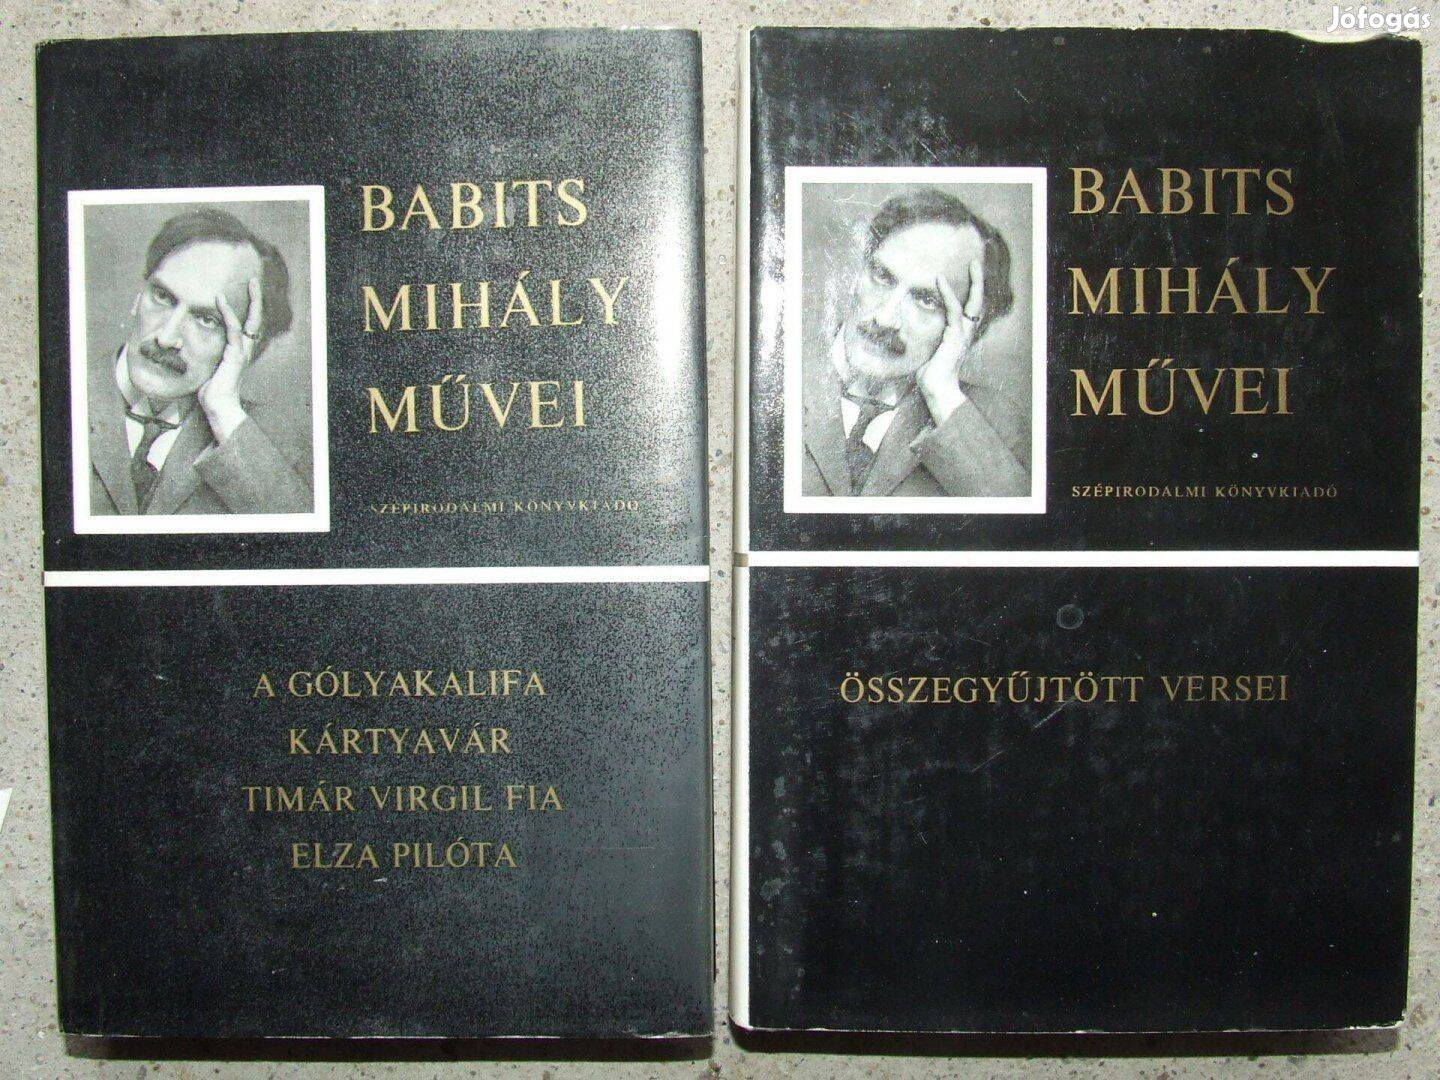 Babits Mihály művei 2 db könyv